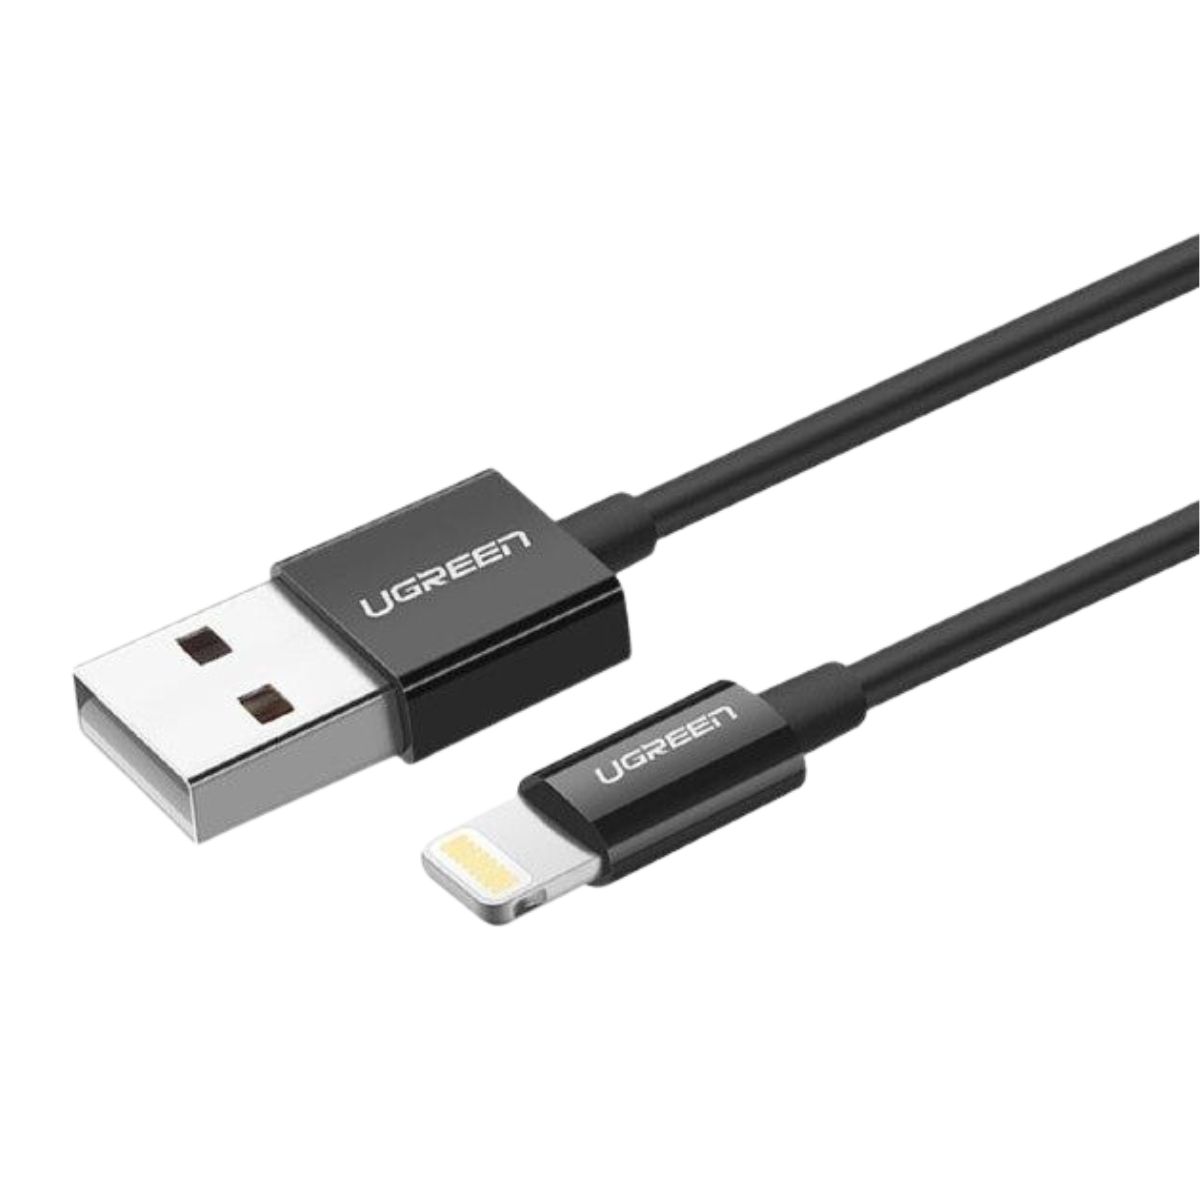 Cáp sạc nhanh 2m USB-A sang Lightning Ugreen 80823 US155 màu đen, hỗ trợ đầu ra 5V/2.4A, Tốc độ truyền 480Mbps